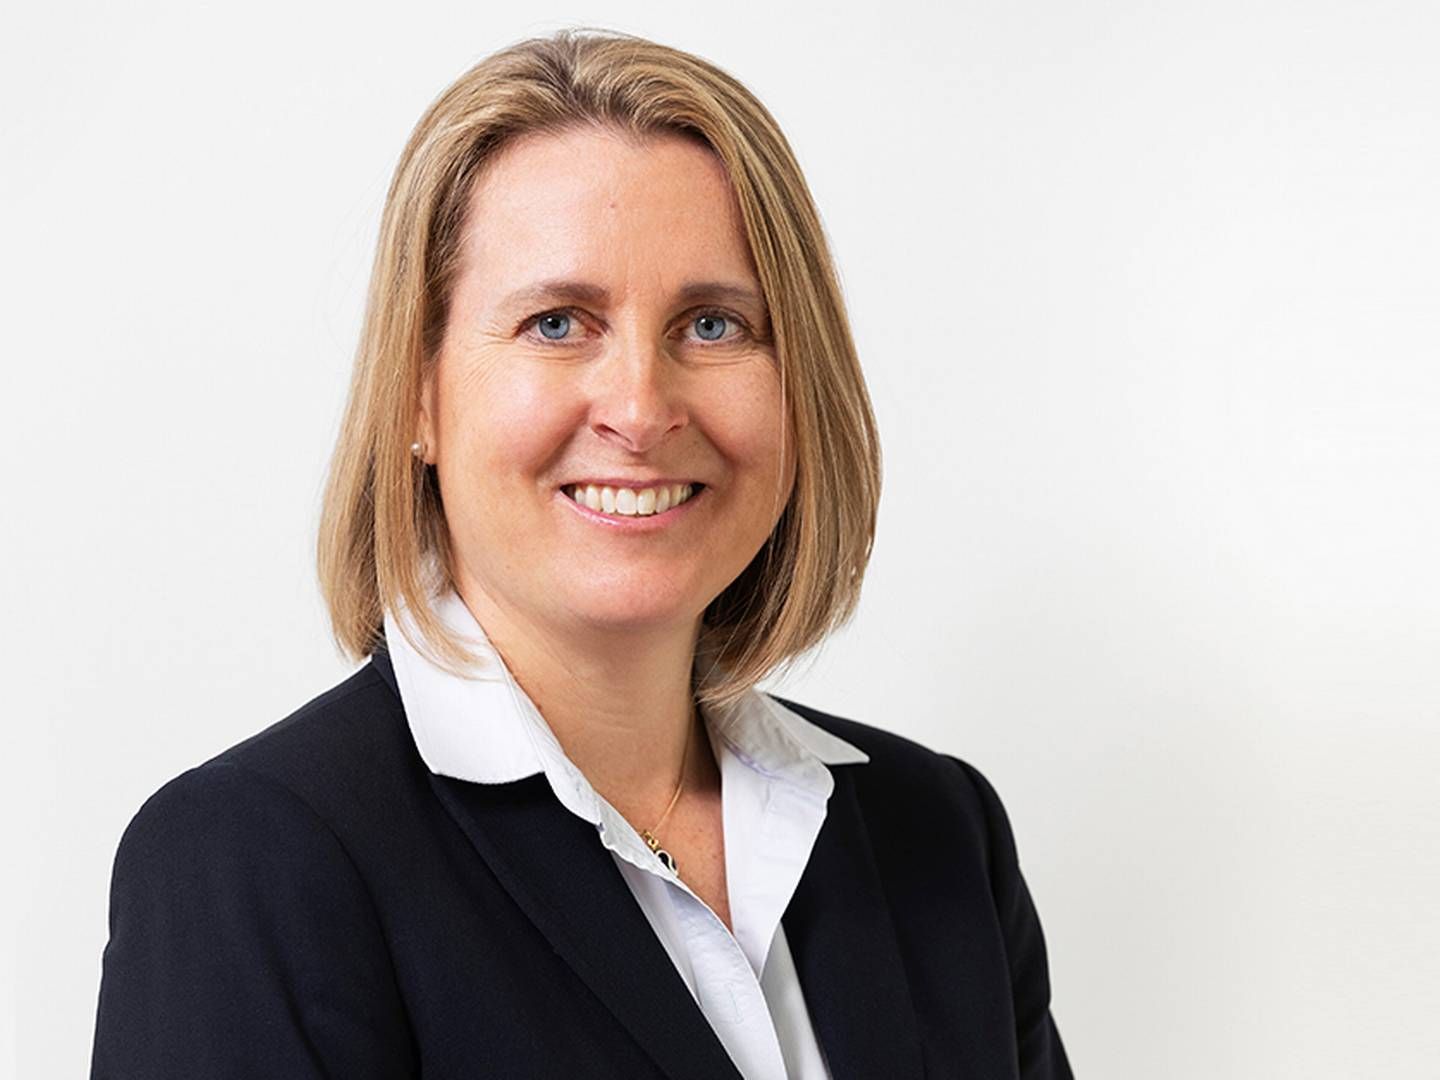 Magdalena Wahlqvist Alveskog has been CEO of Handelsbanken Fonder since 2019. | Photo: Handelsbanken/PR